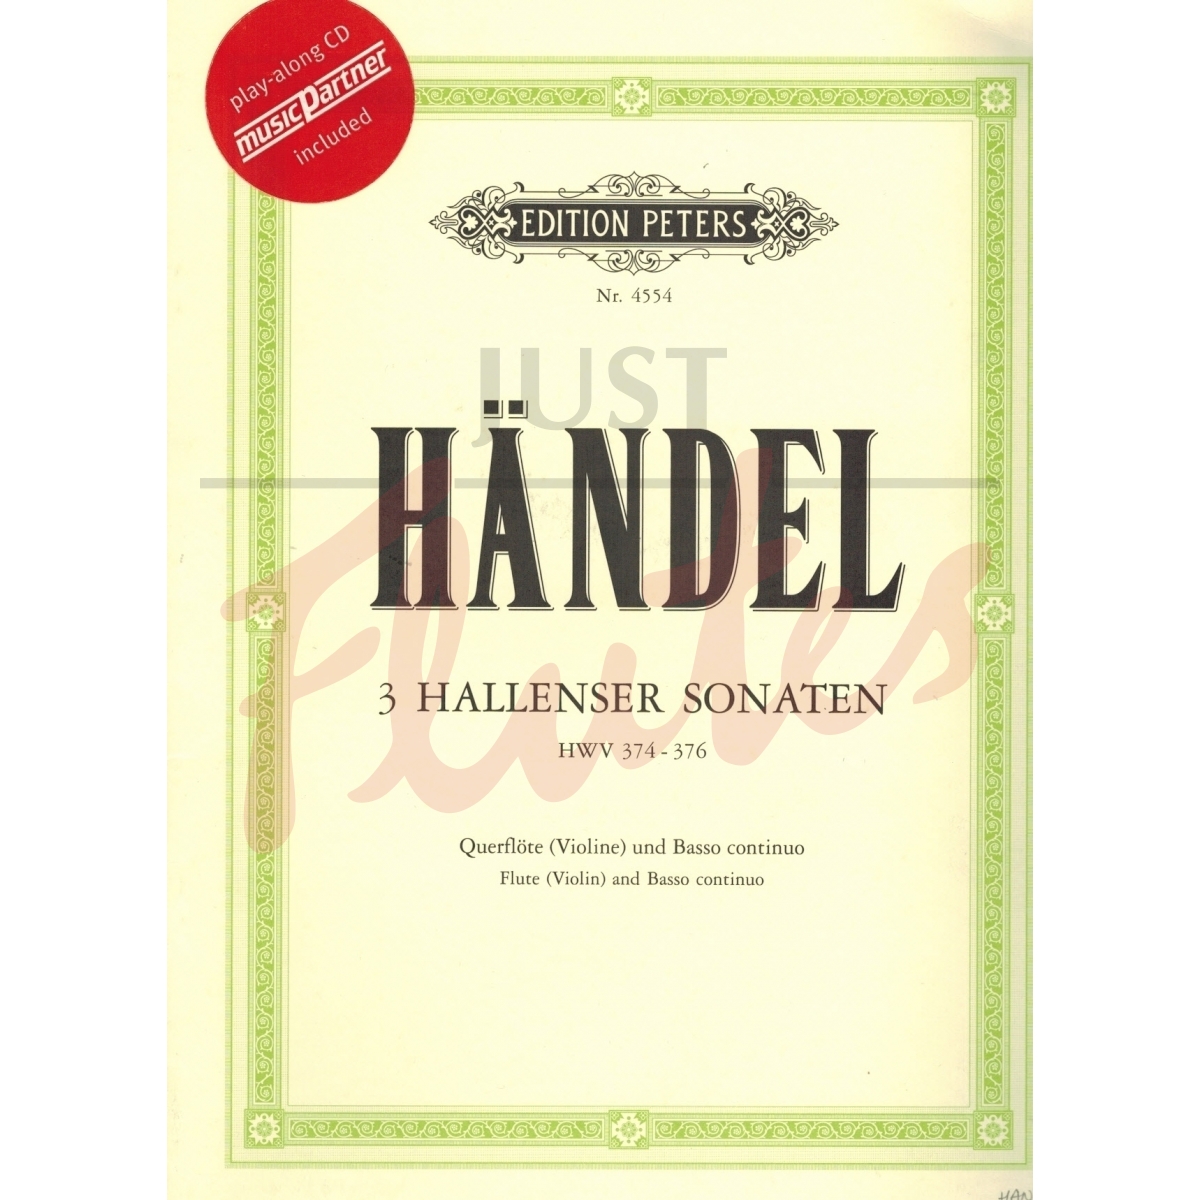 Hallenser Sonatas Nos 1-3